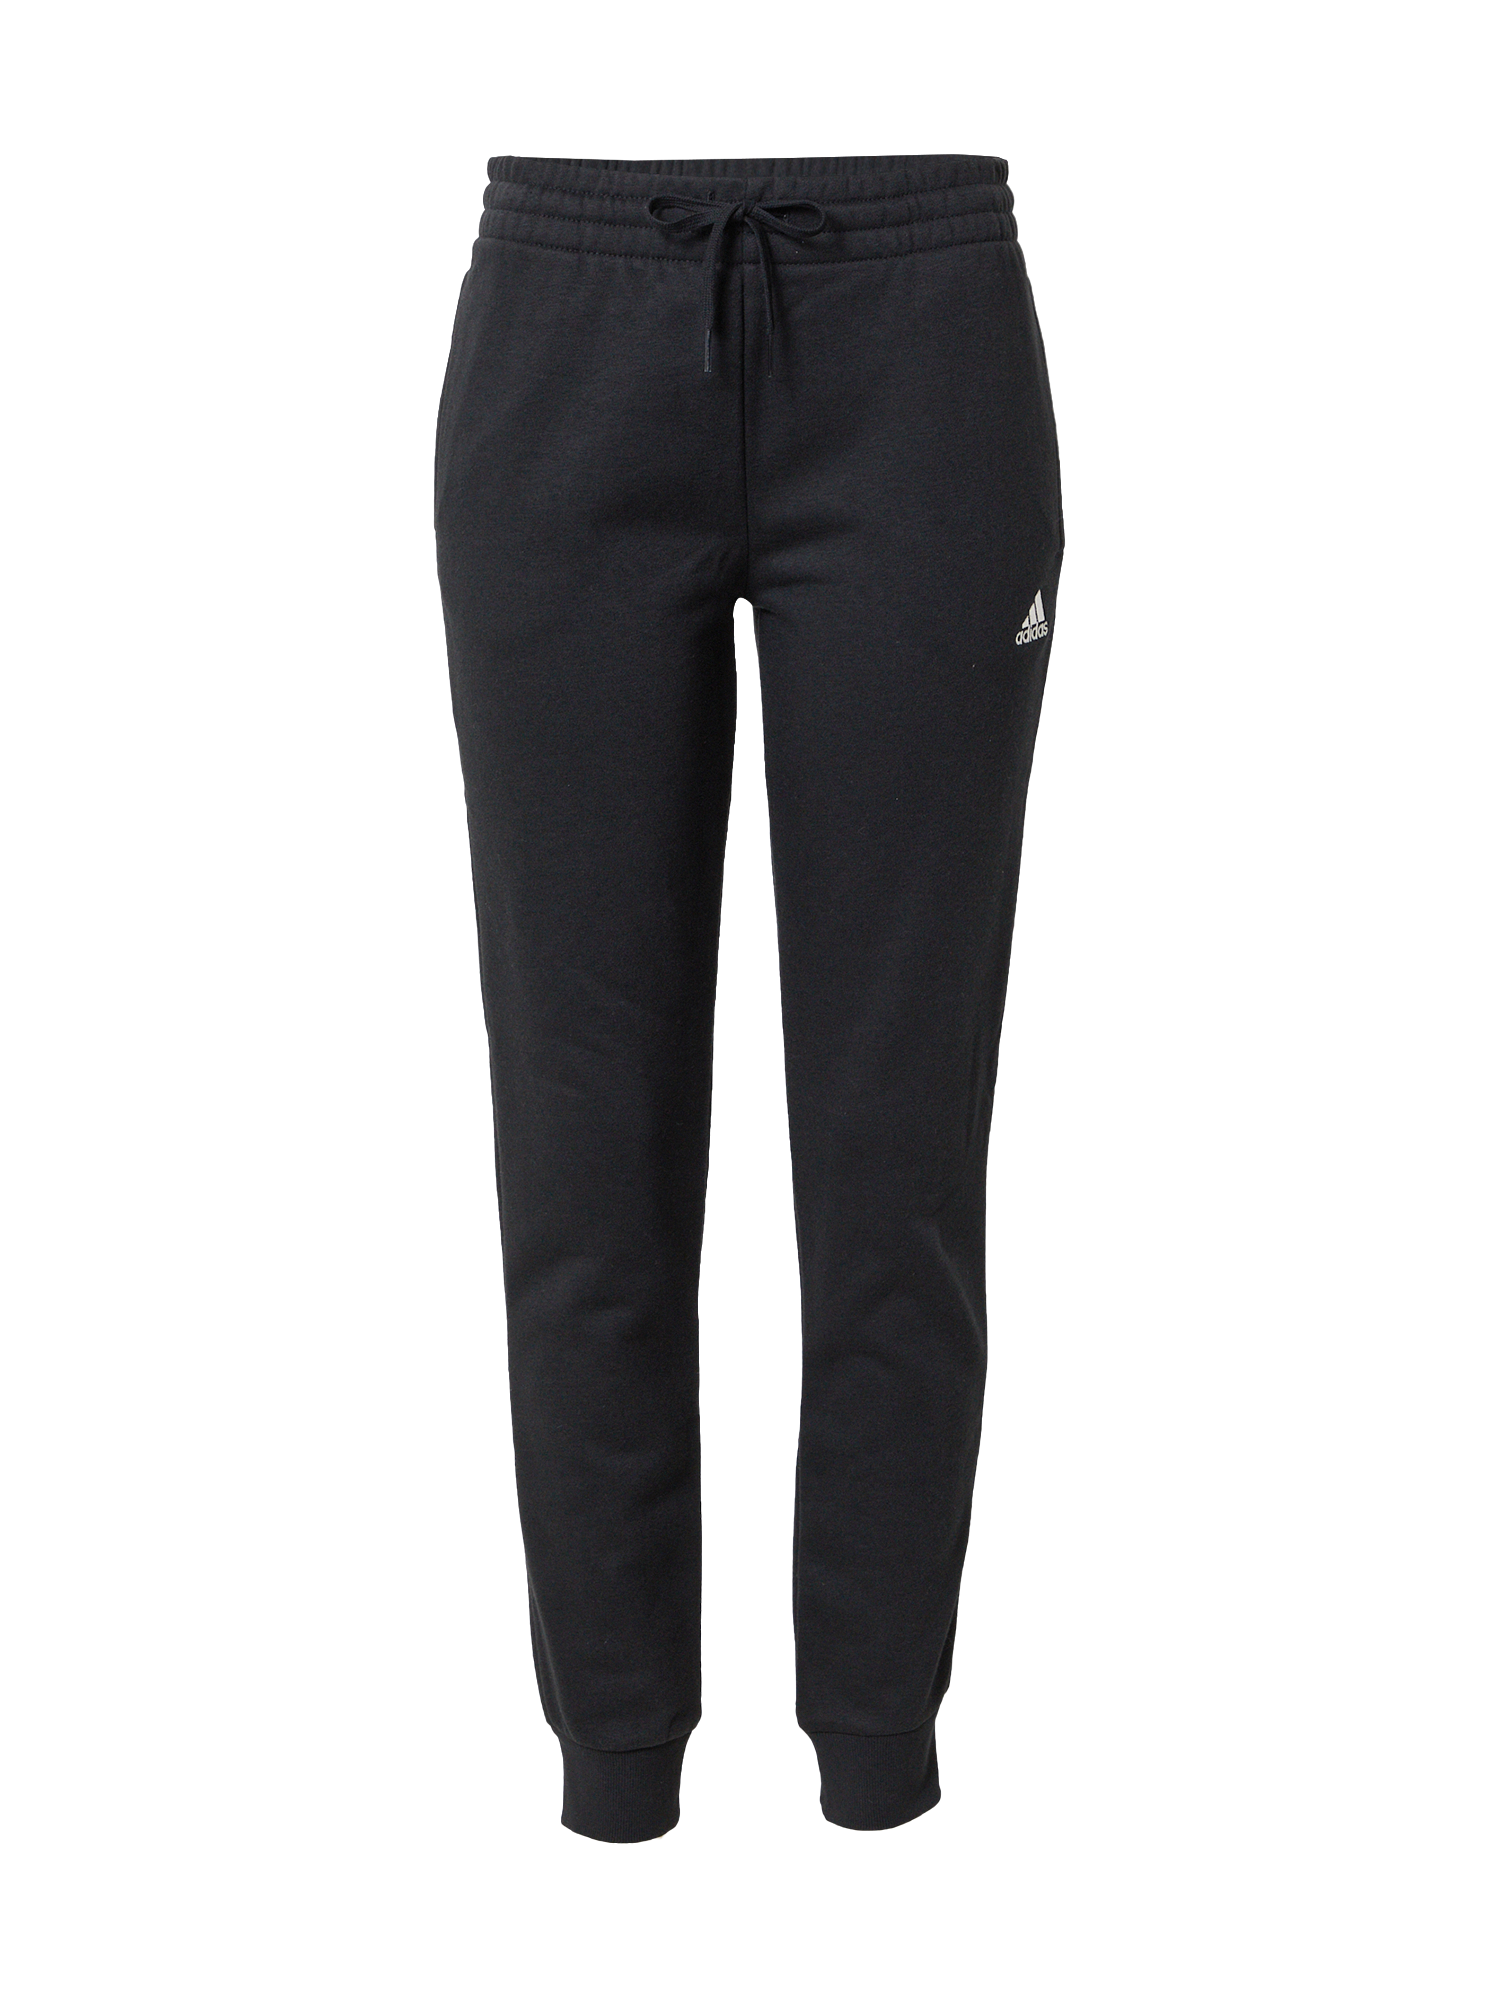 Kobiety Odzież ADIDAS PERFORMANCE Spodnie sportowe w kolorze Czarnym 